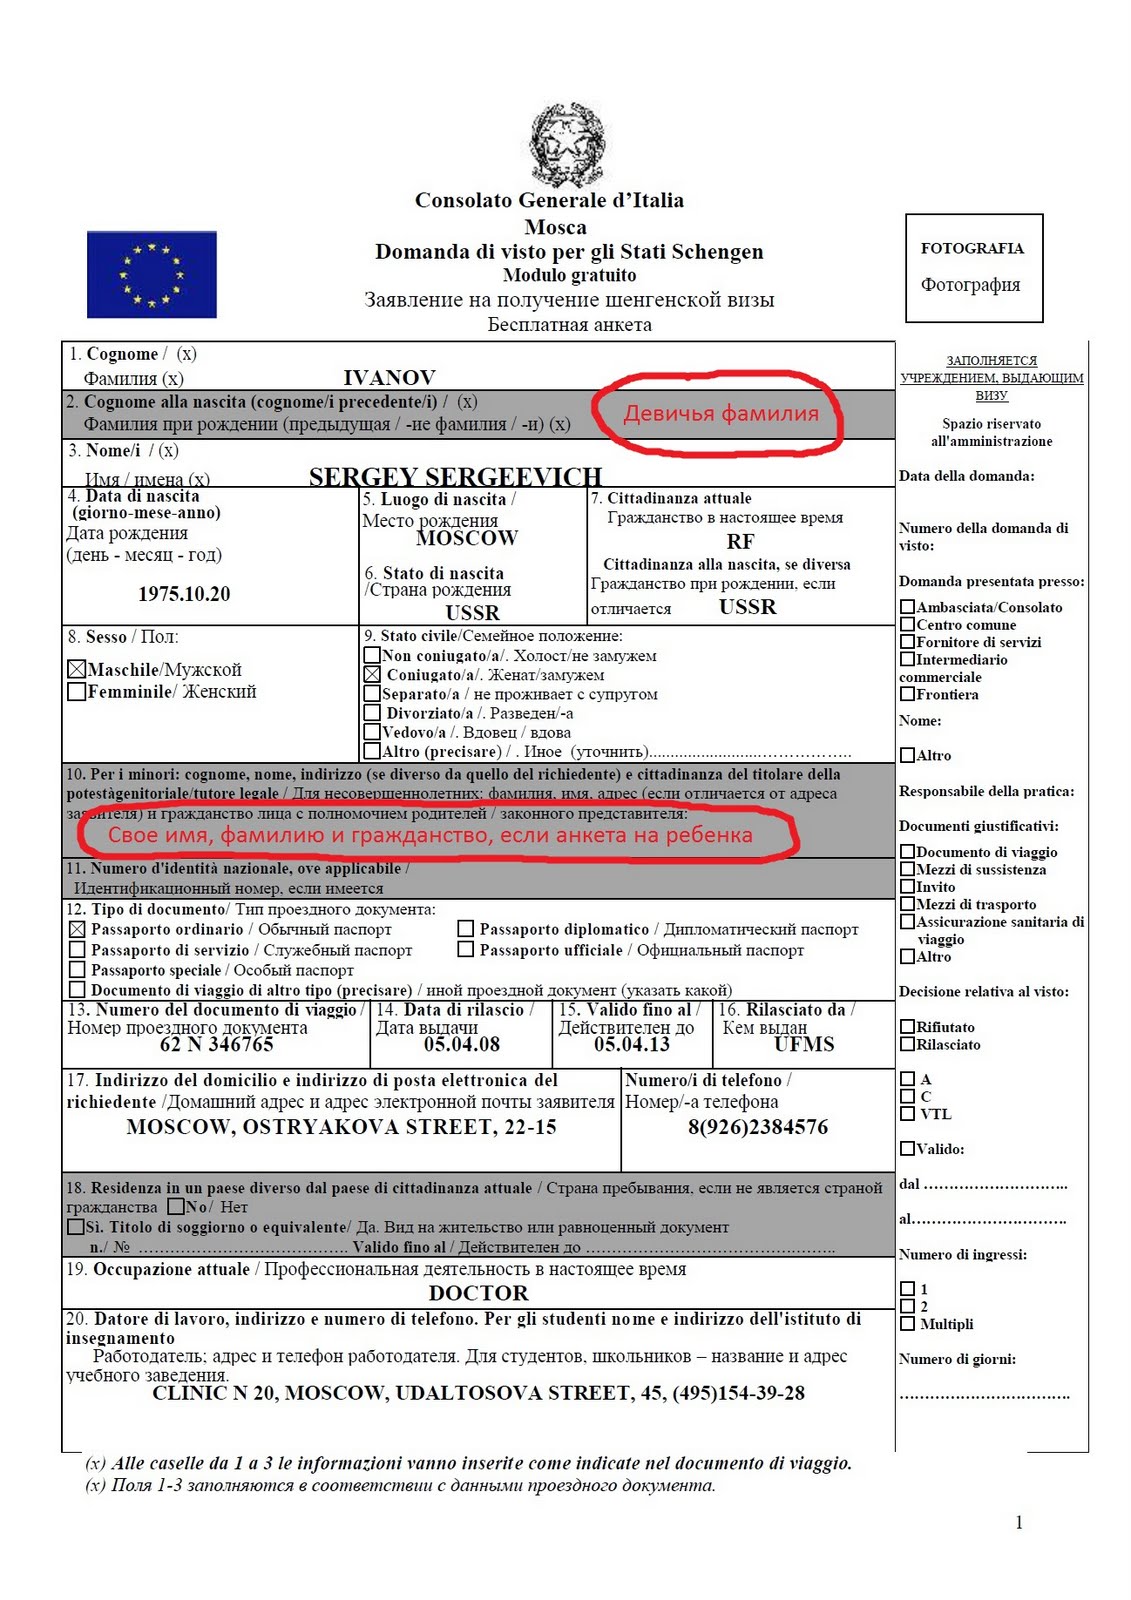 Документы на визу в италию - процедура подачи и стоимость оформления